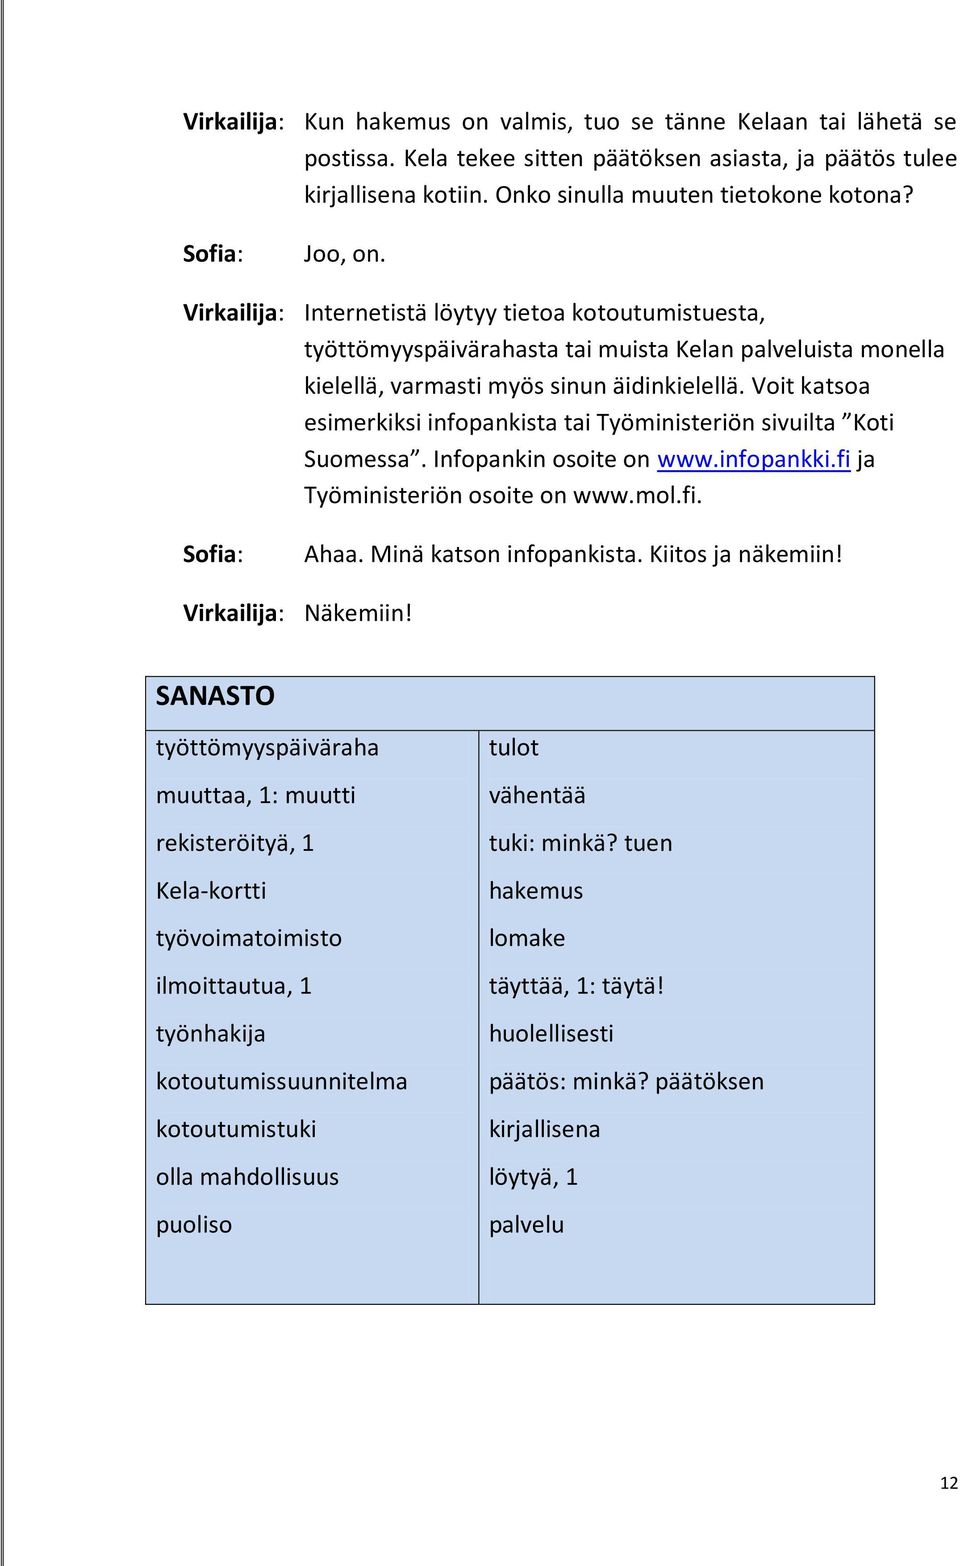 Voit katsoa esimerkiksi infopankista tai Työministeriön sivuilta Koti Suomessa. Infopankin osoite on www.infopankki.fi ja Työministeriön osoite on www.mol.fi. Ahaa. Minä katson infopankista.